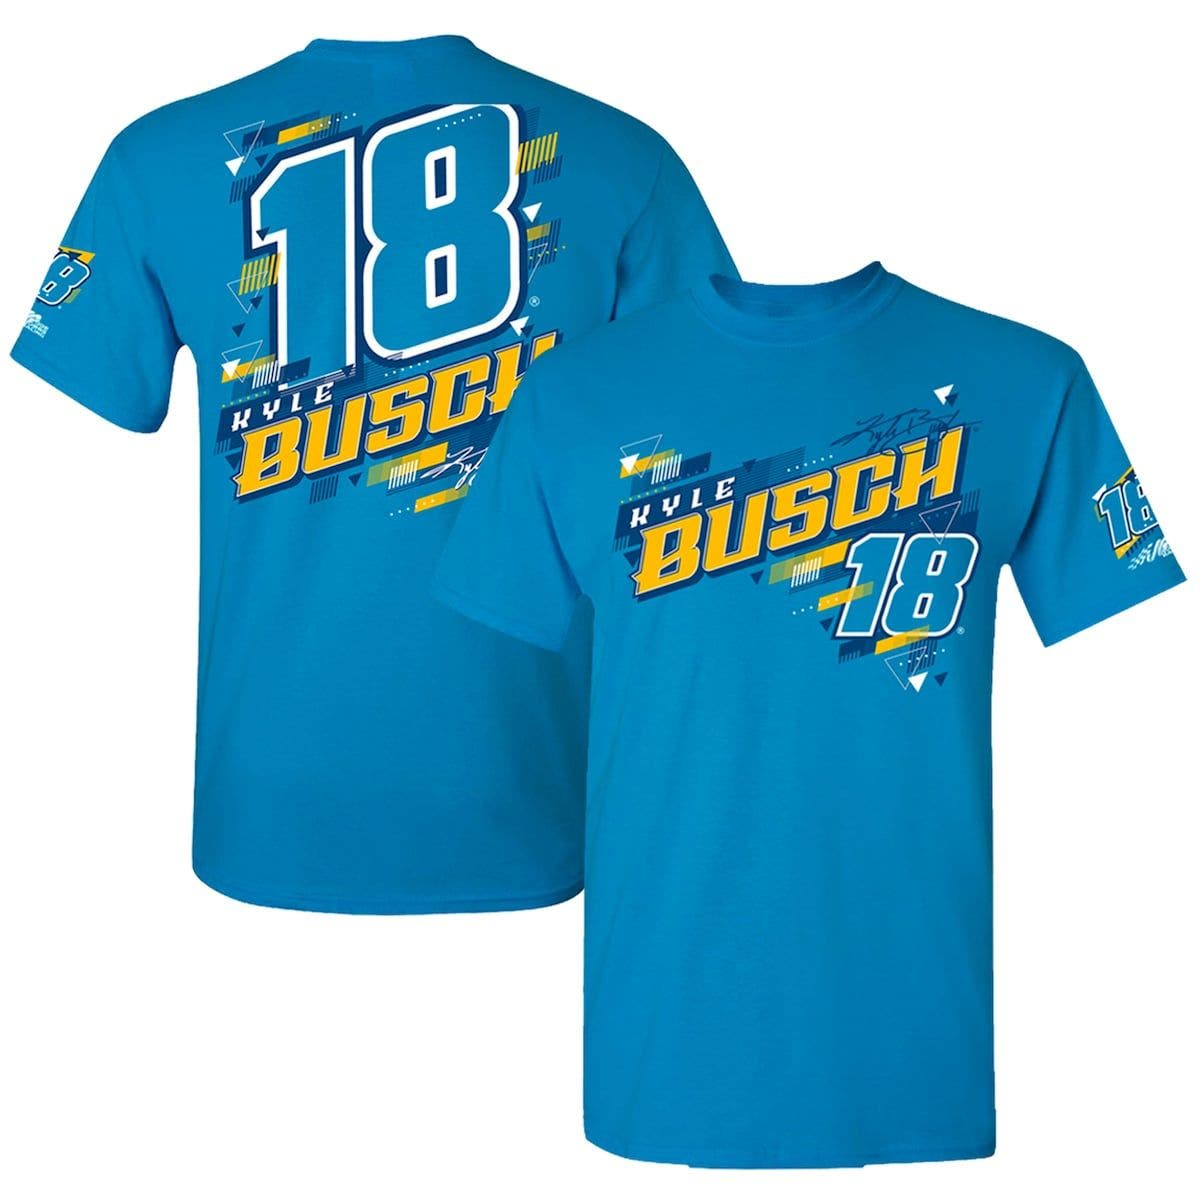 JOE GIBBS RACING TEAM COLLECTION Men's Joe Gibbs Racing Team Collection Light Blue Kyle Busch Lifestyle T-Shirt